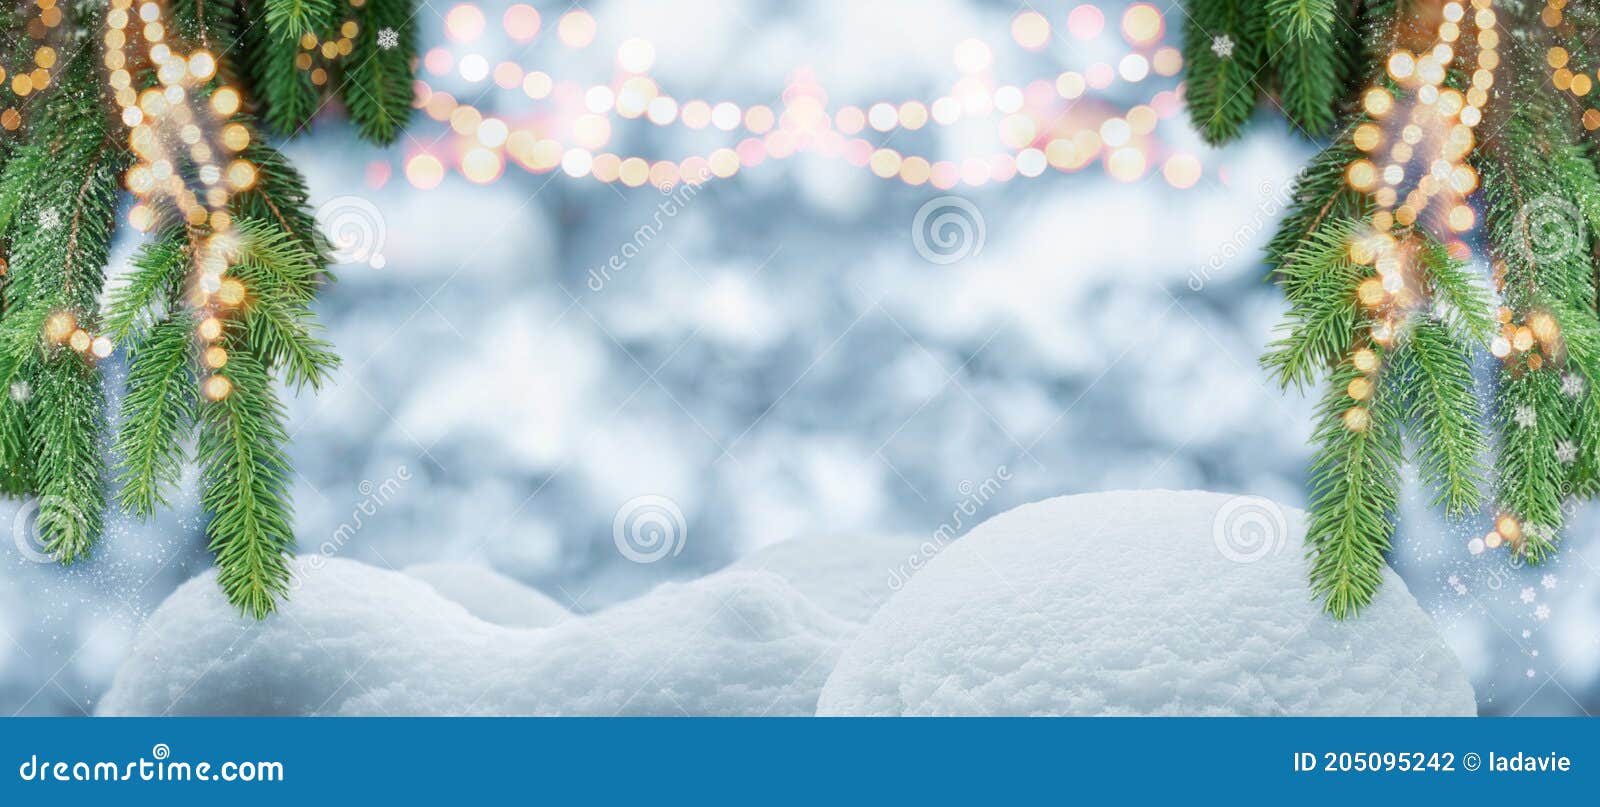 Muốn tô điểm không gian Giáng sinh trở nên đặc biệt hơn? Hãy xem ngay hình ảnh trang trí cây thông Giáng sinh nền phông với hoa dây. Những sợi dây tinh xảo kết hợp với hoa và lá tạo nên một phong cách trang trí độc đáo, tạo cảm giác ấm áp cho không gian nhà bạn.